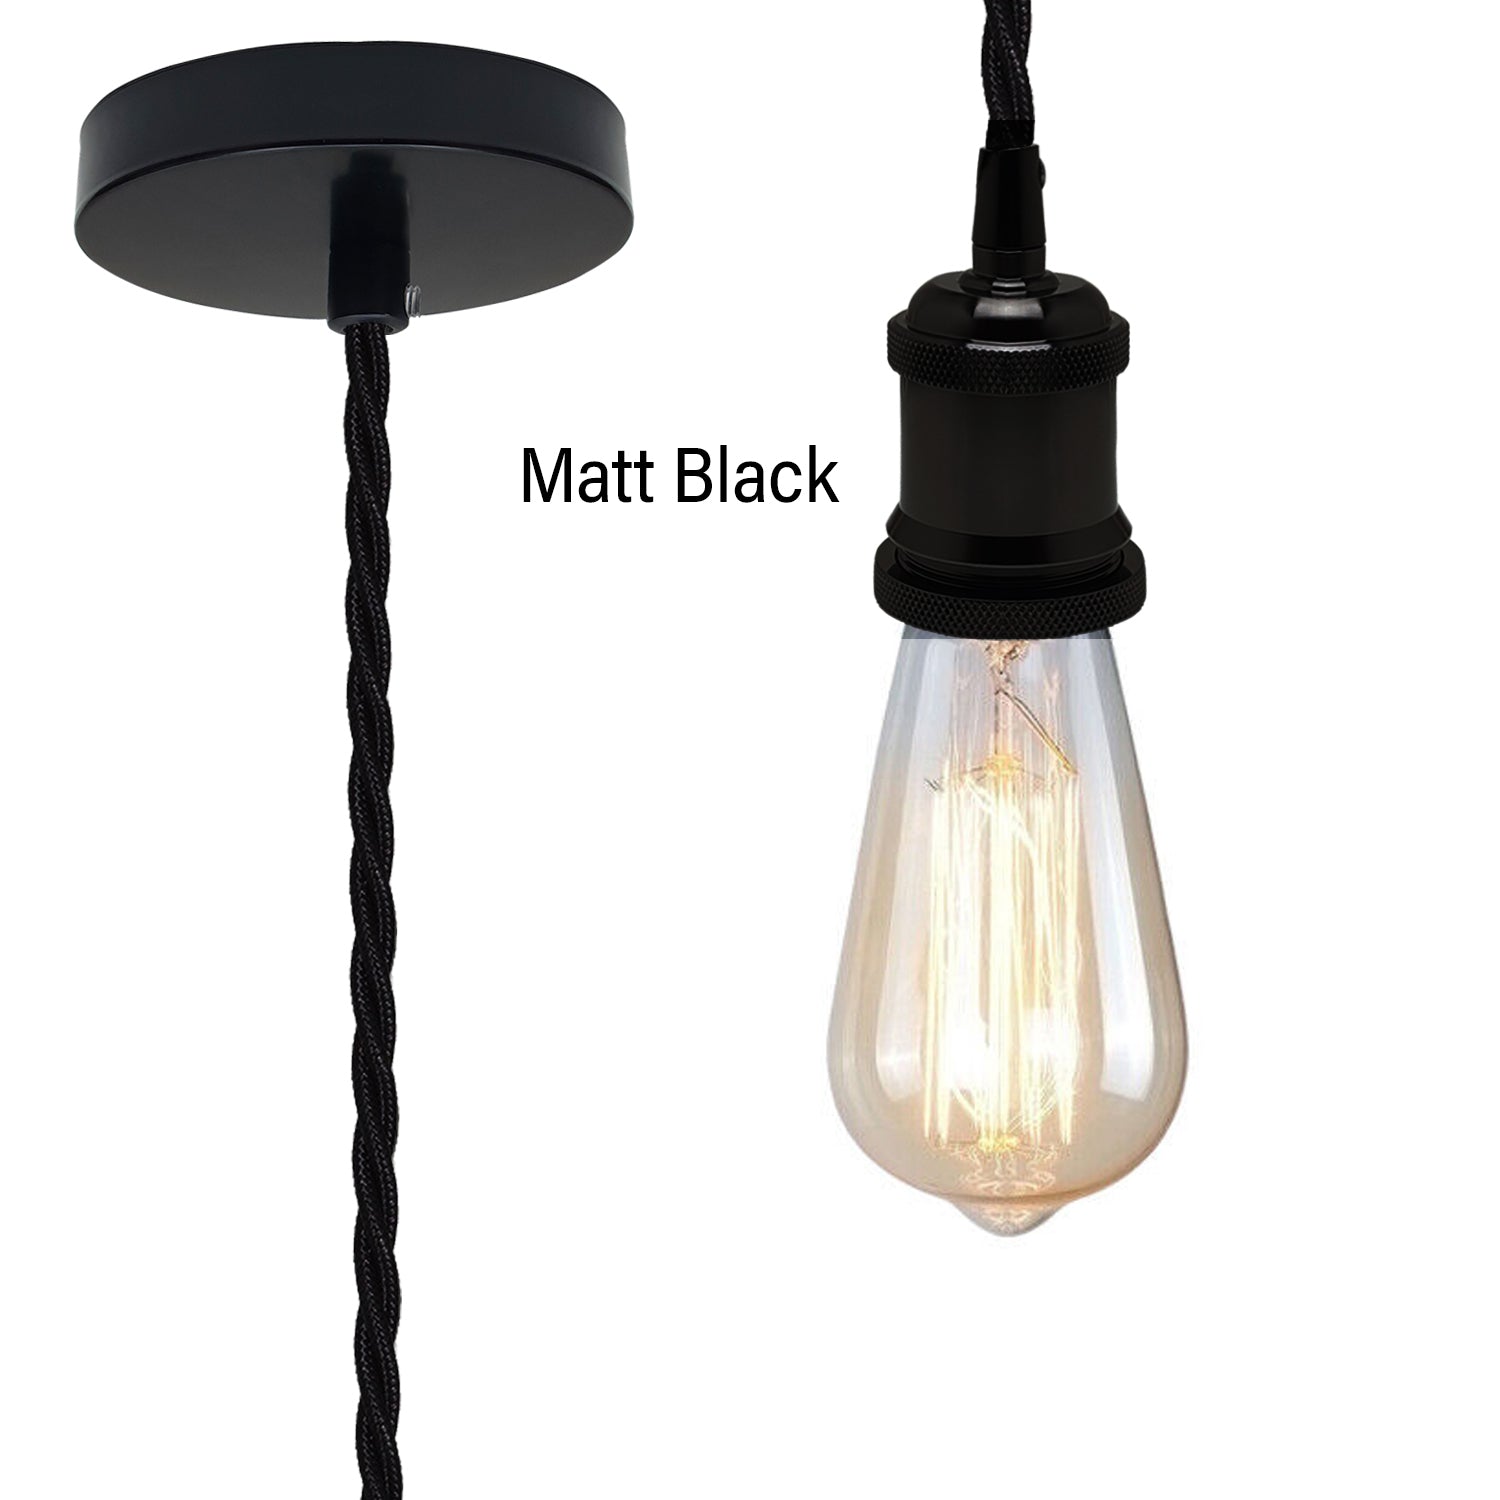 Matt Black Vintage Metal Ceiling Light Fitting Black Twisted Braided Flex 2m E27 Lamp Holder Suspended Pendant Light Fitting Kit for Indoor Lightings